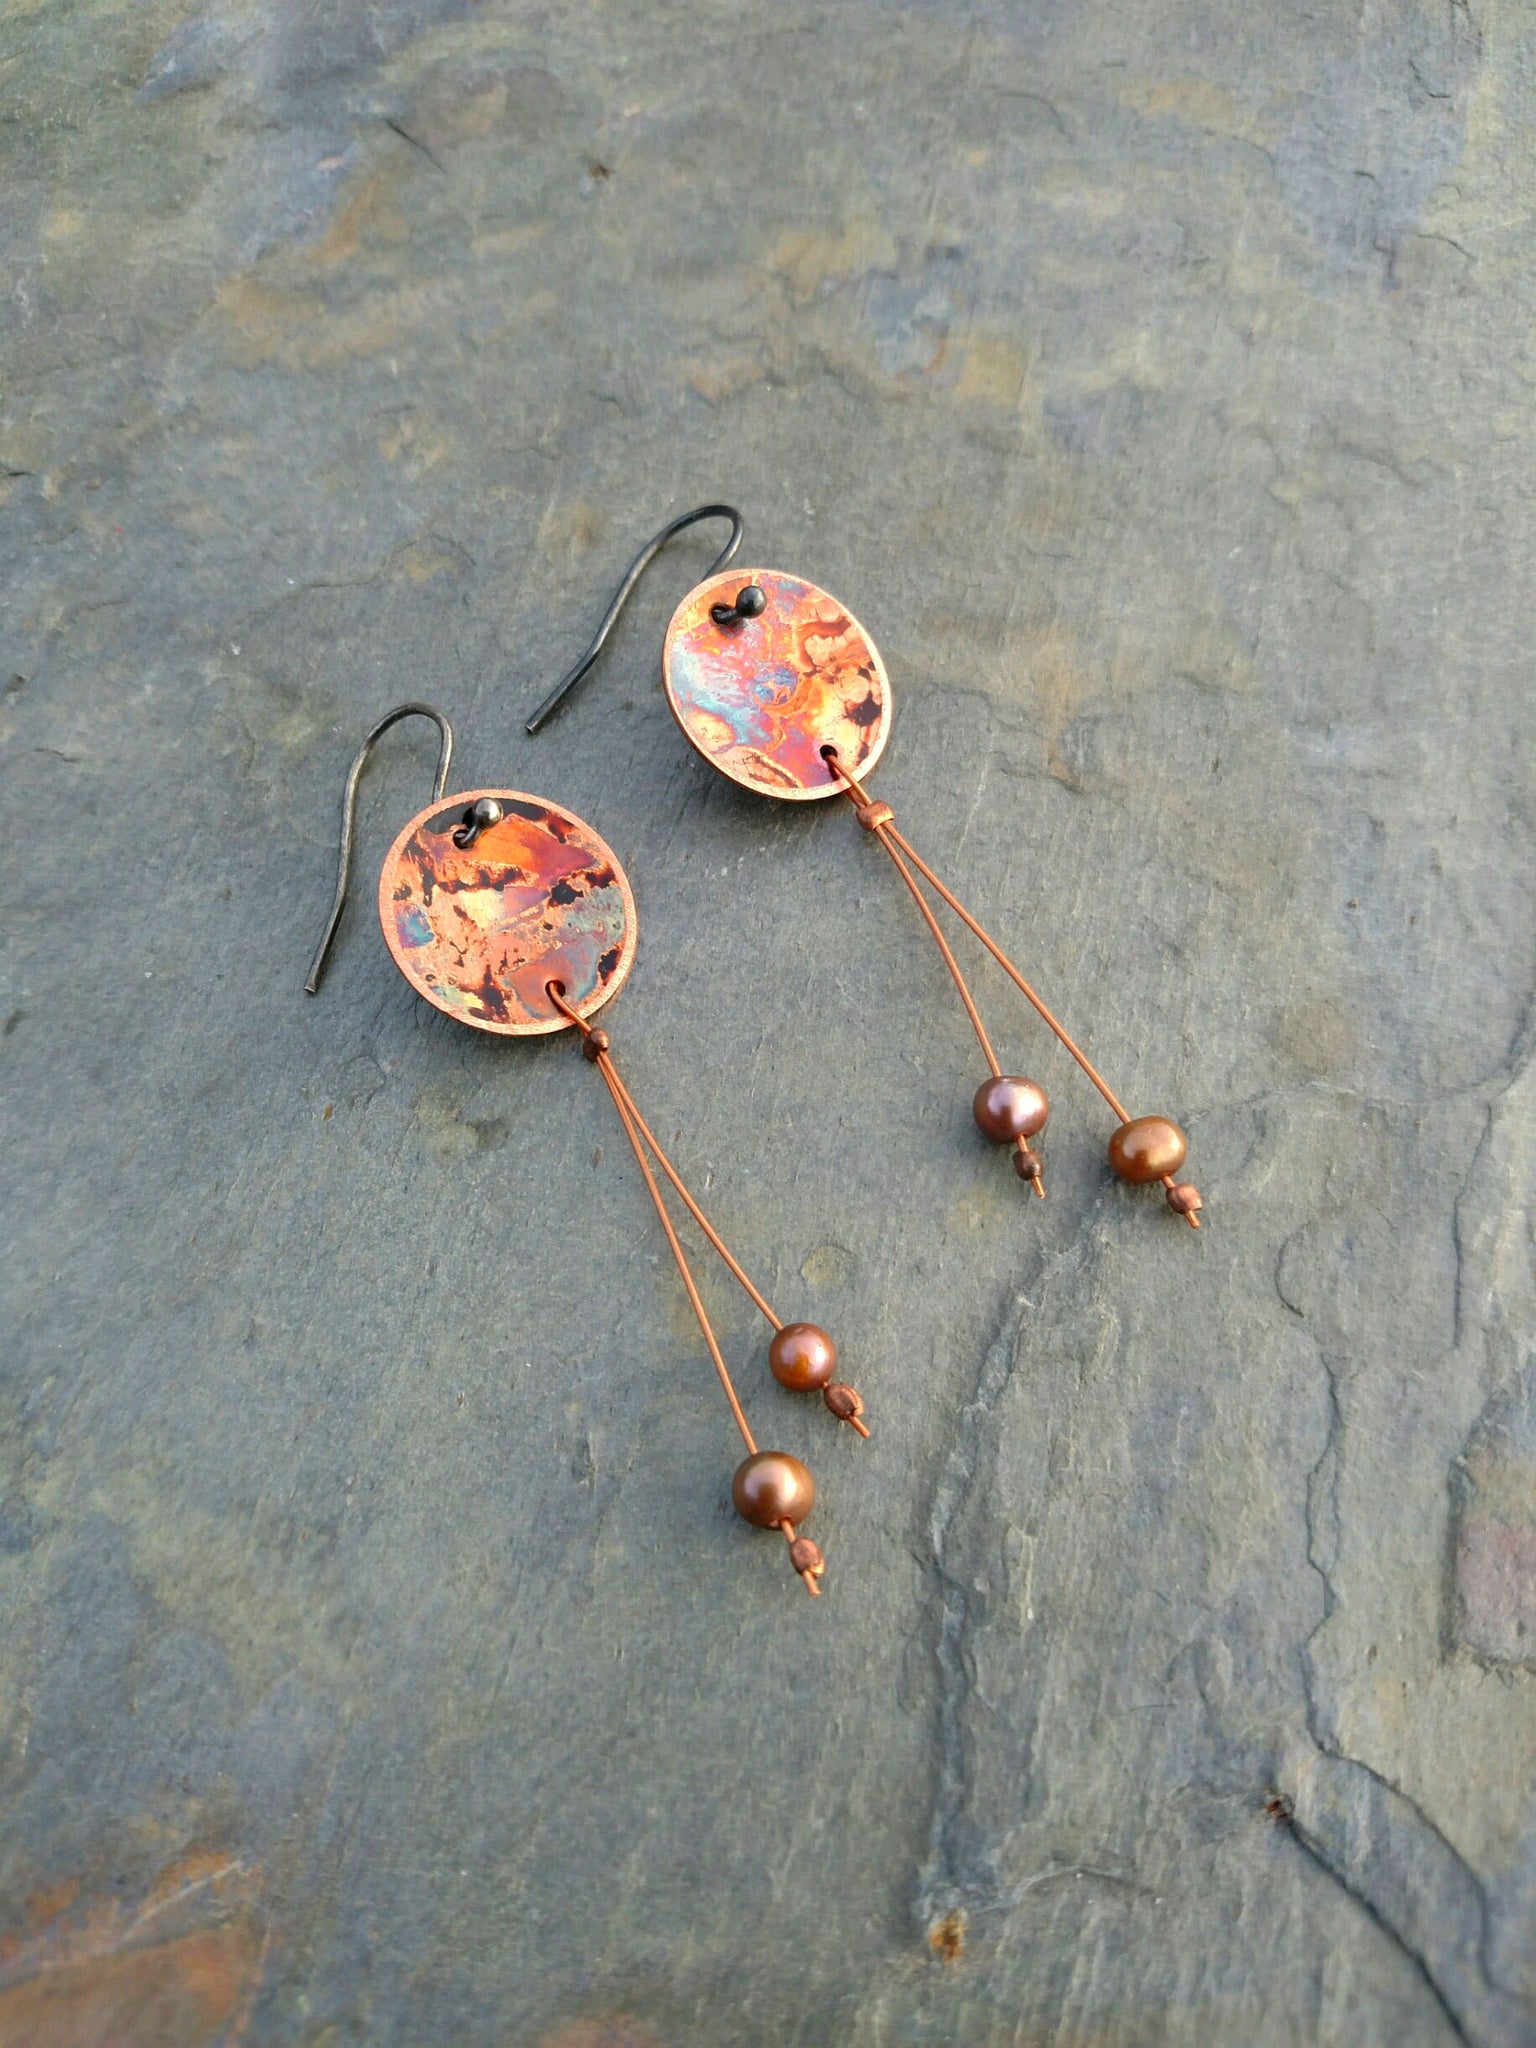 firepainted earrings, copper earrings, flame painted copper earrings, flame painted earrings, flame painted jewelry, firepainted jewelry, firepainted copper earrings